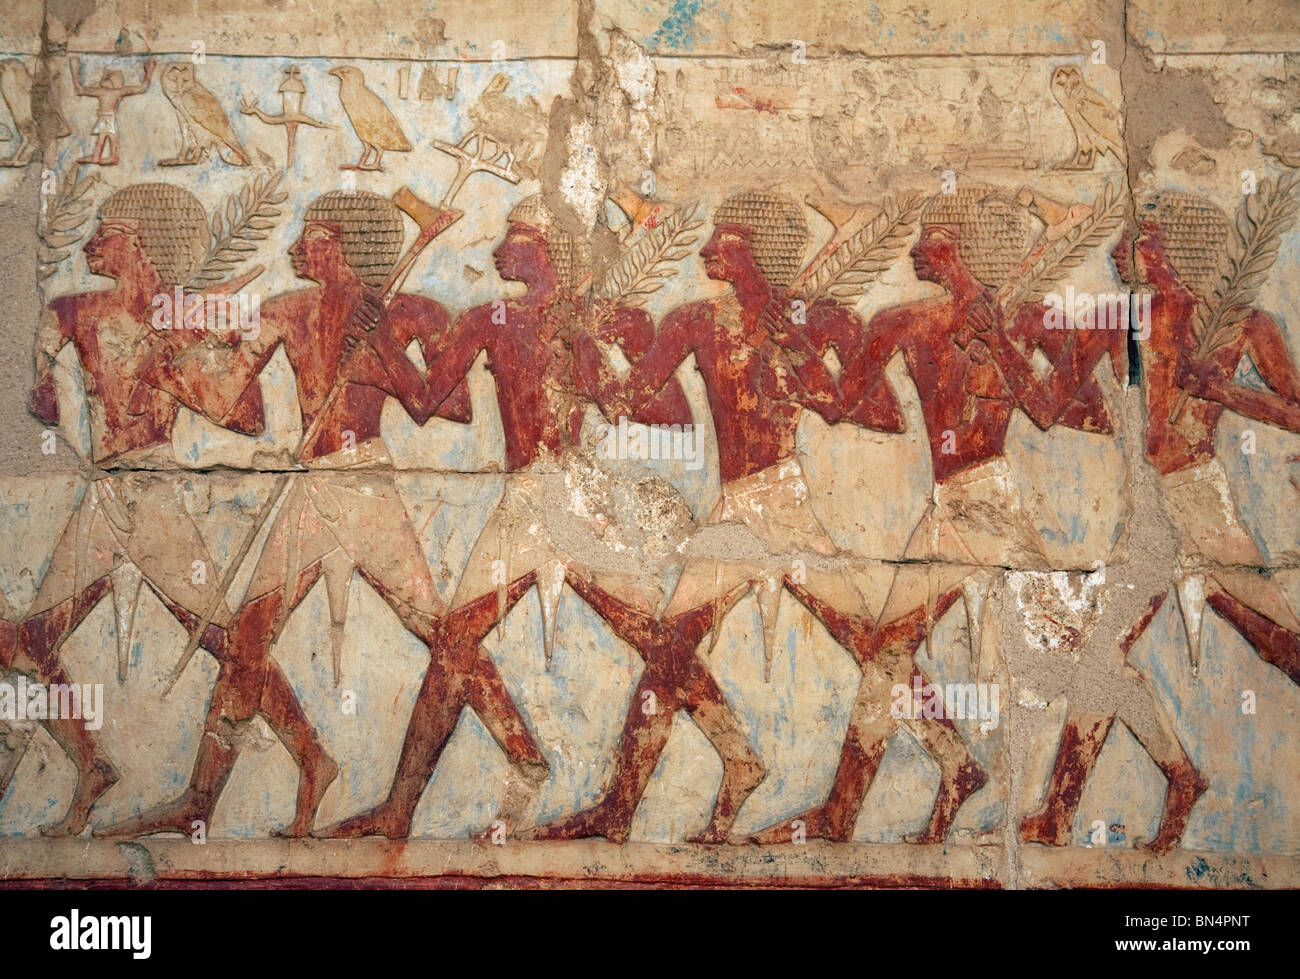 Bas-relief sculpture d'Hatshepsout Voyage au pays de Pount (la Somalie), Temple d'Hatshepsout, Luxor, Égypte Banque D'Images